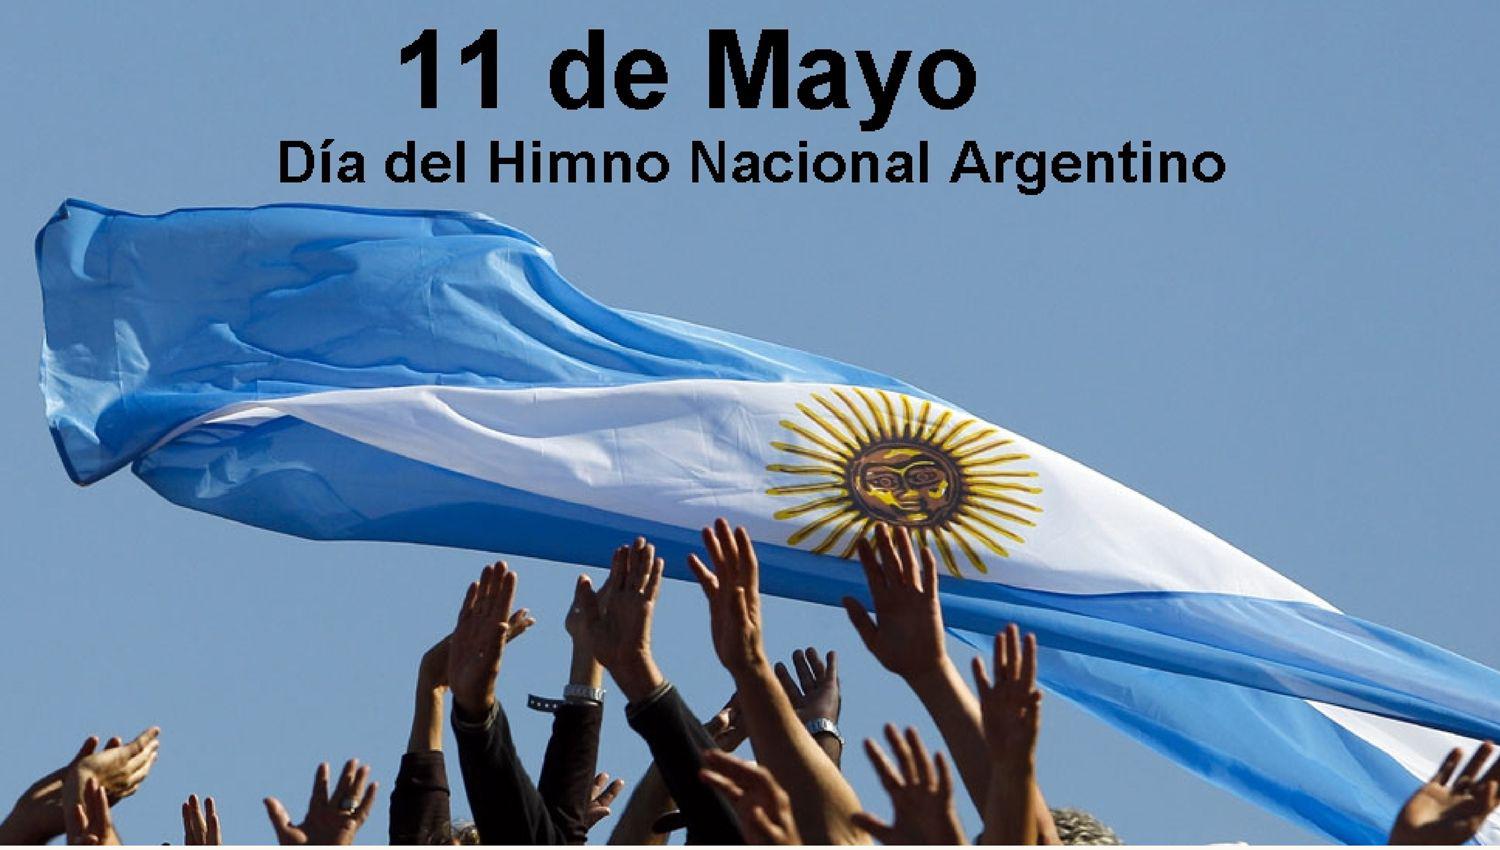 Hoy se conmemora el Diacutea del Himno Nacional Argentino